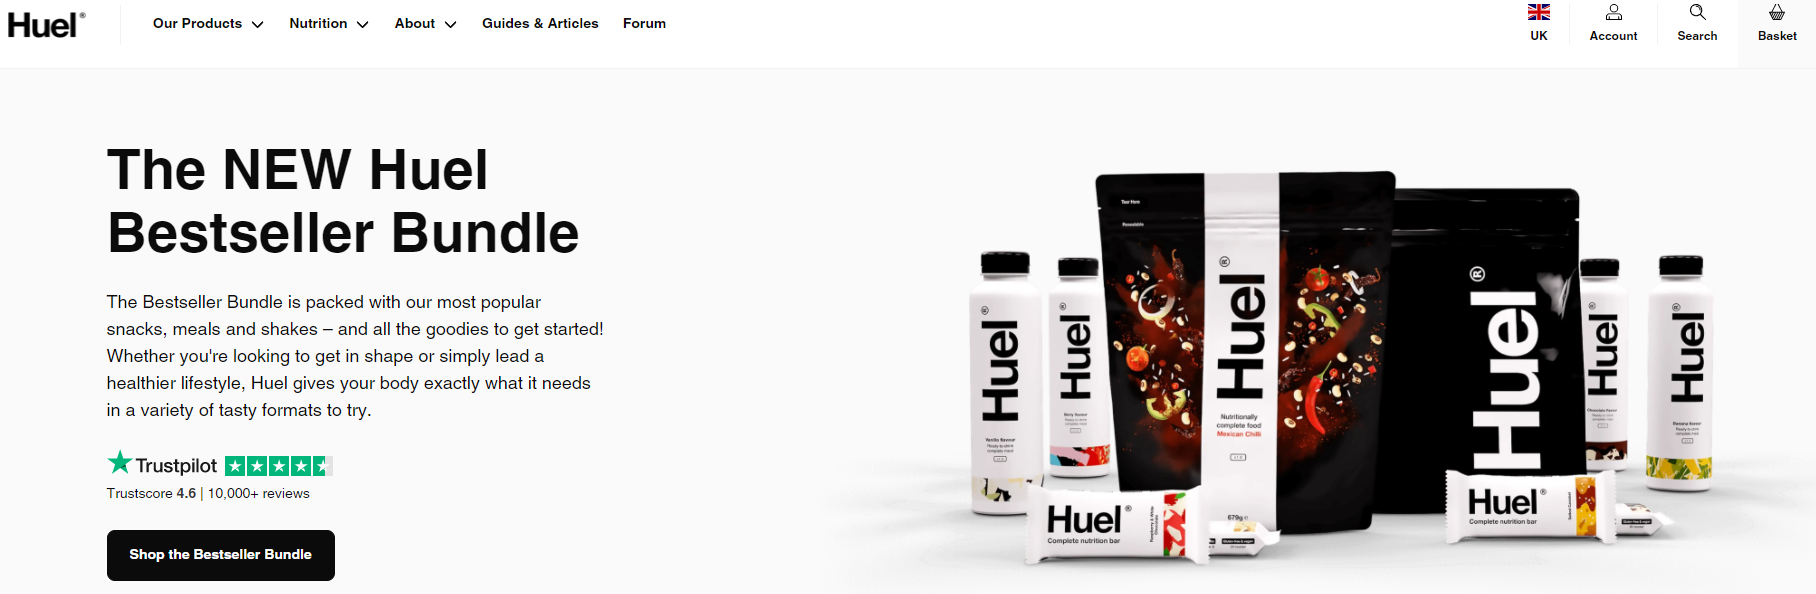 Huel Product Bundle Best Sellers Example